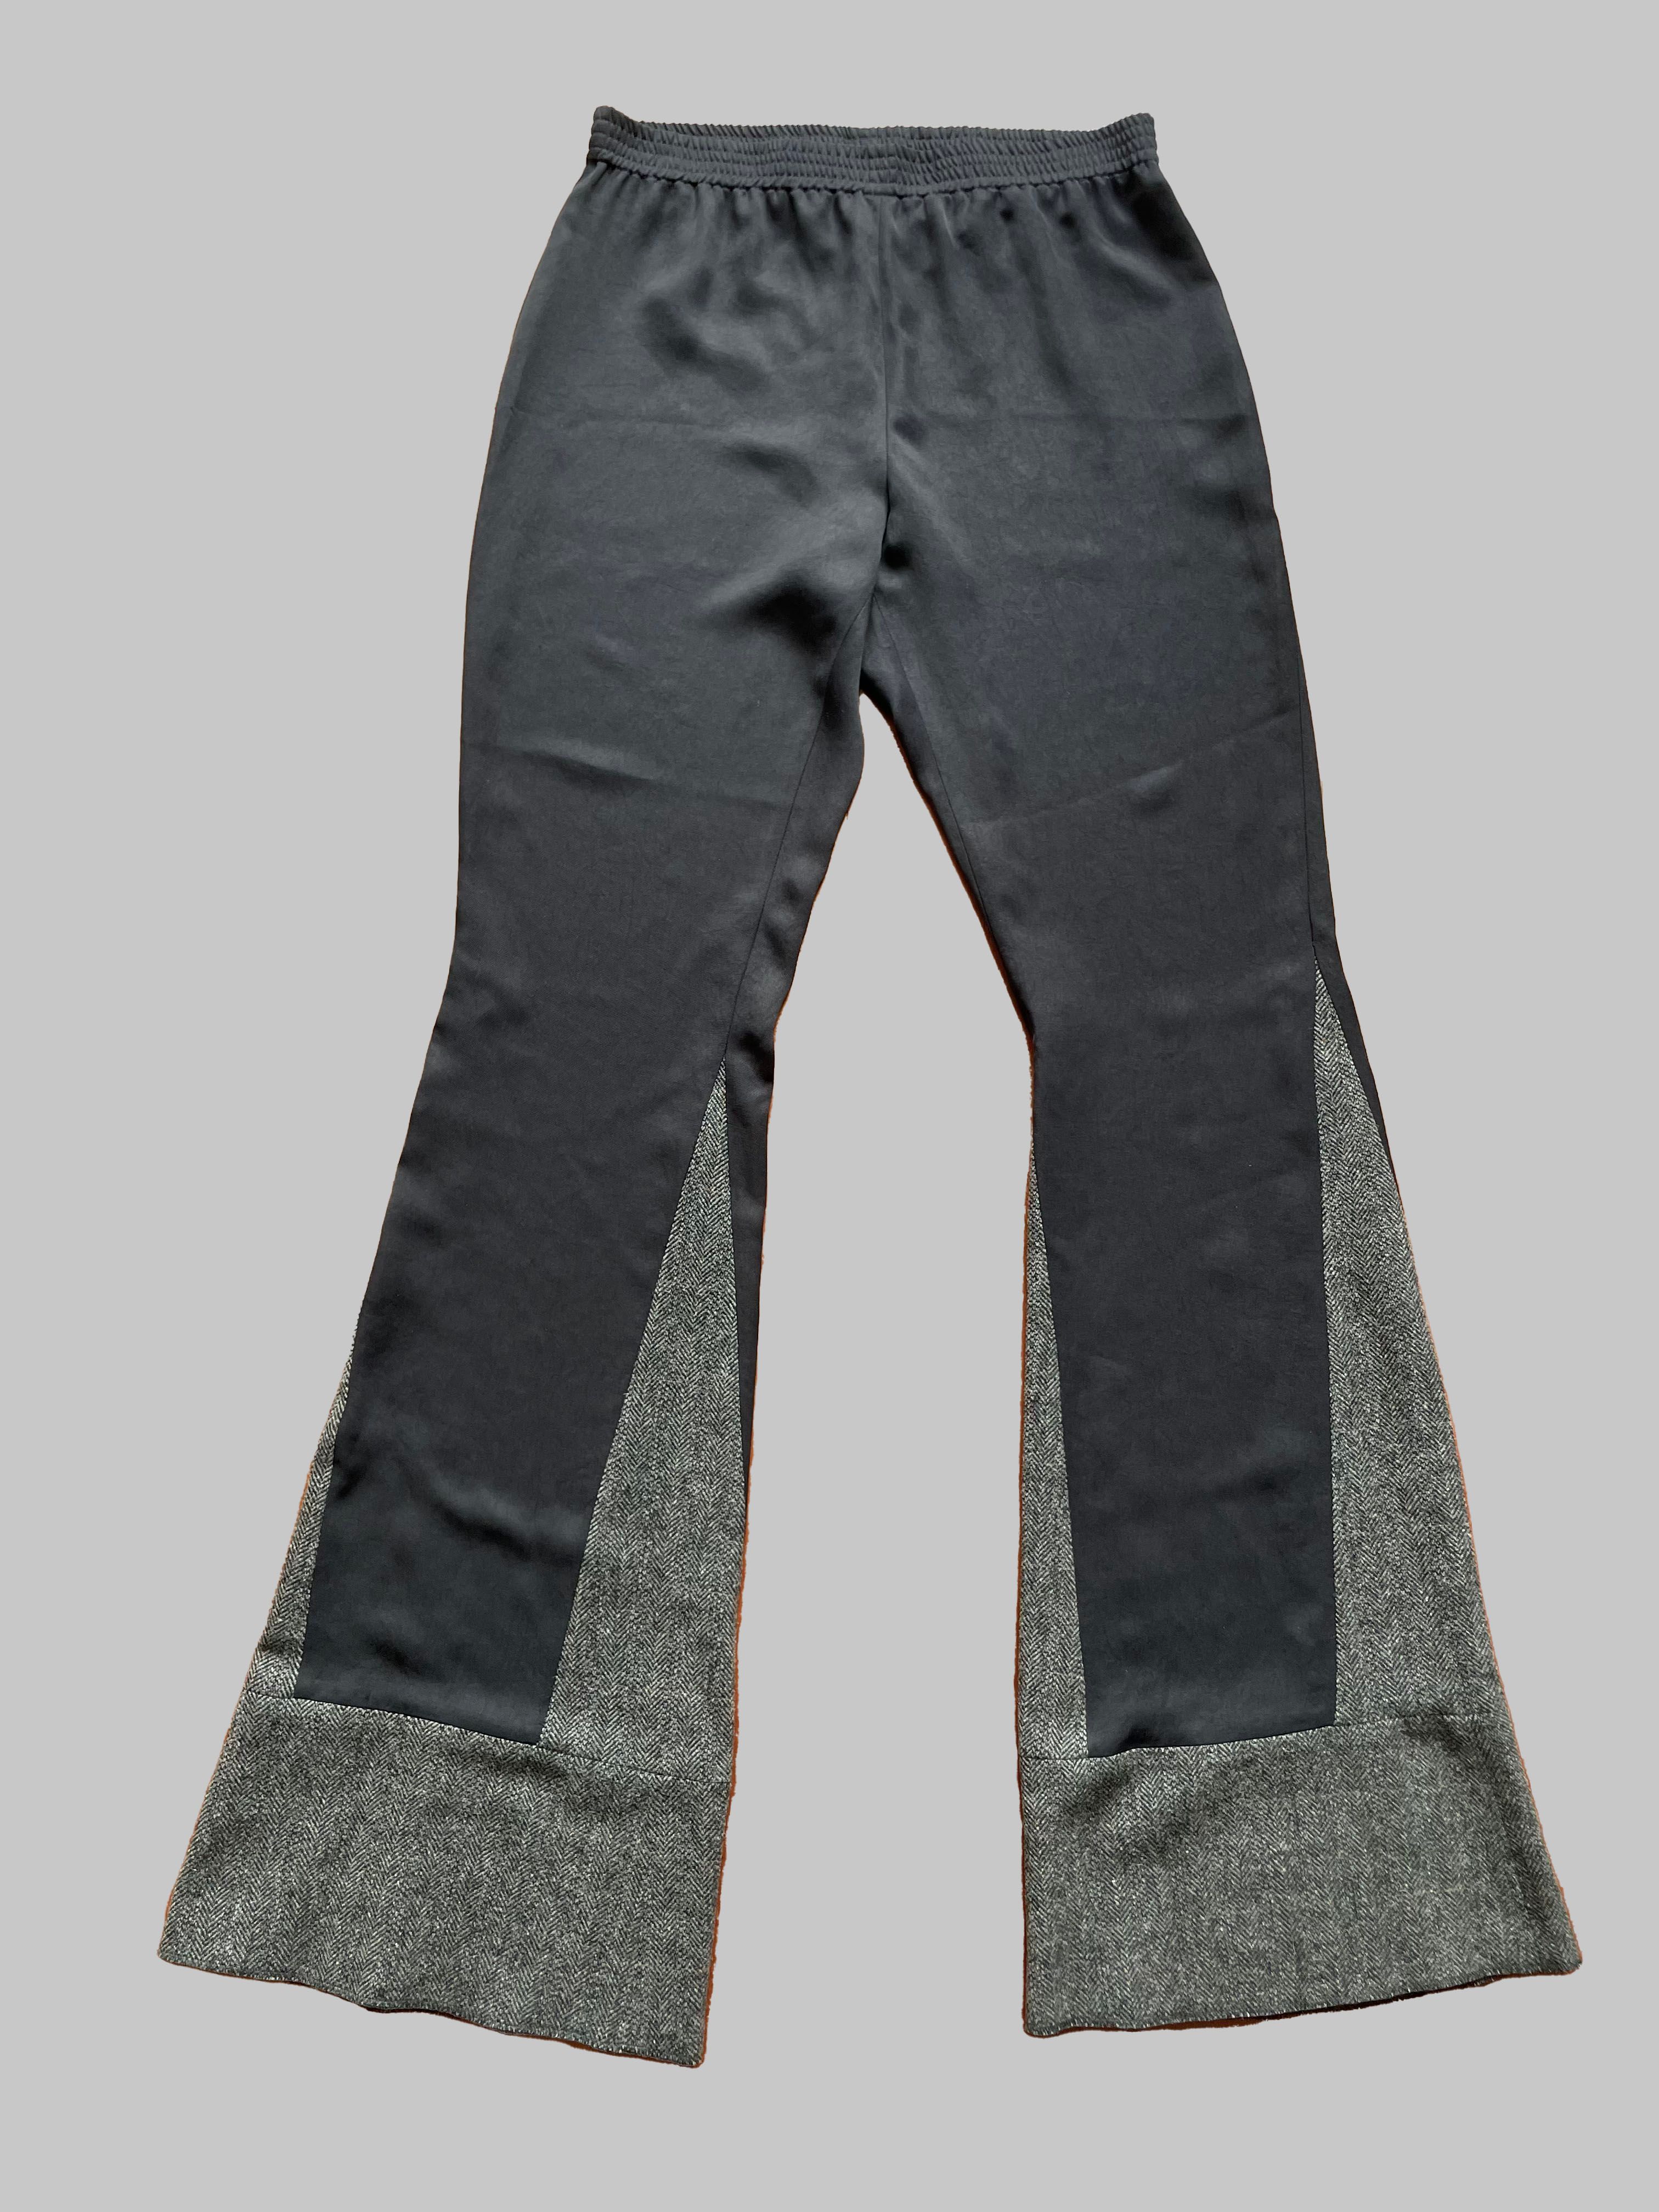 Pre-owned Raf Simons Wool Insert Lounge Pants In Black/grey